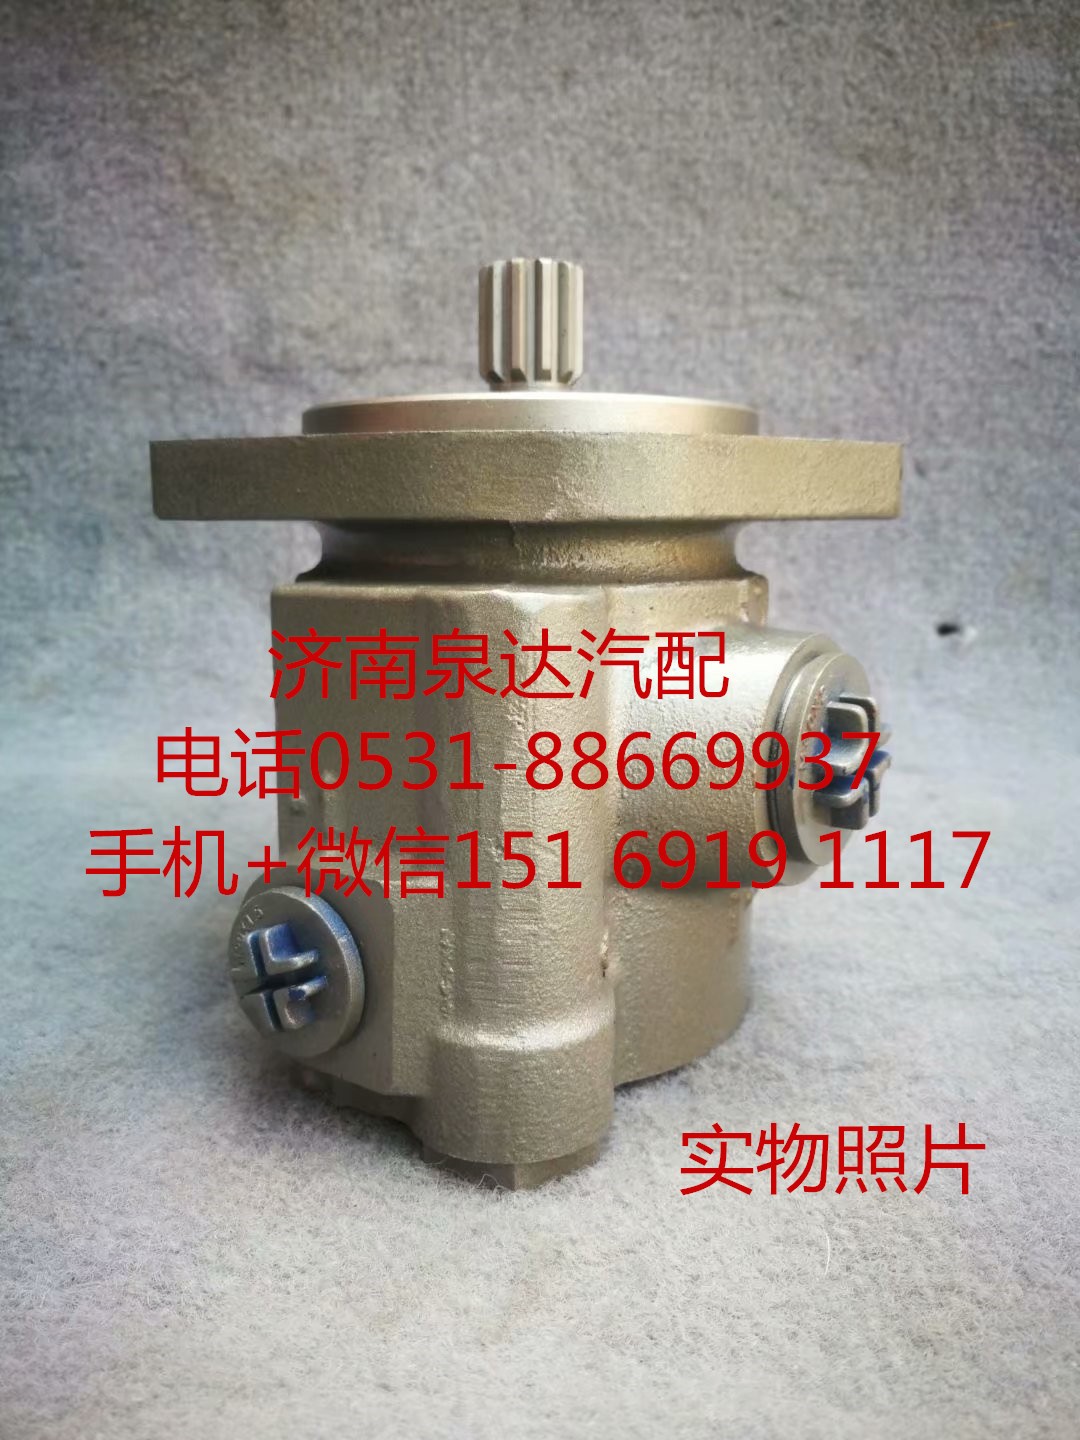 3406010-B9200,转向助力泵,济南泉达汽配有限公司